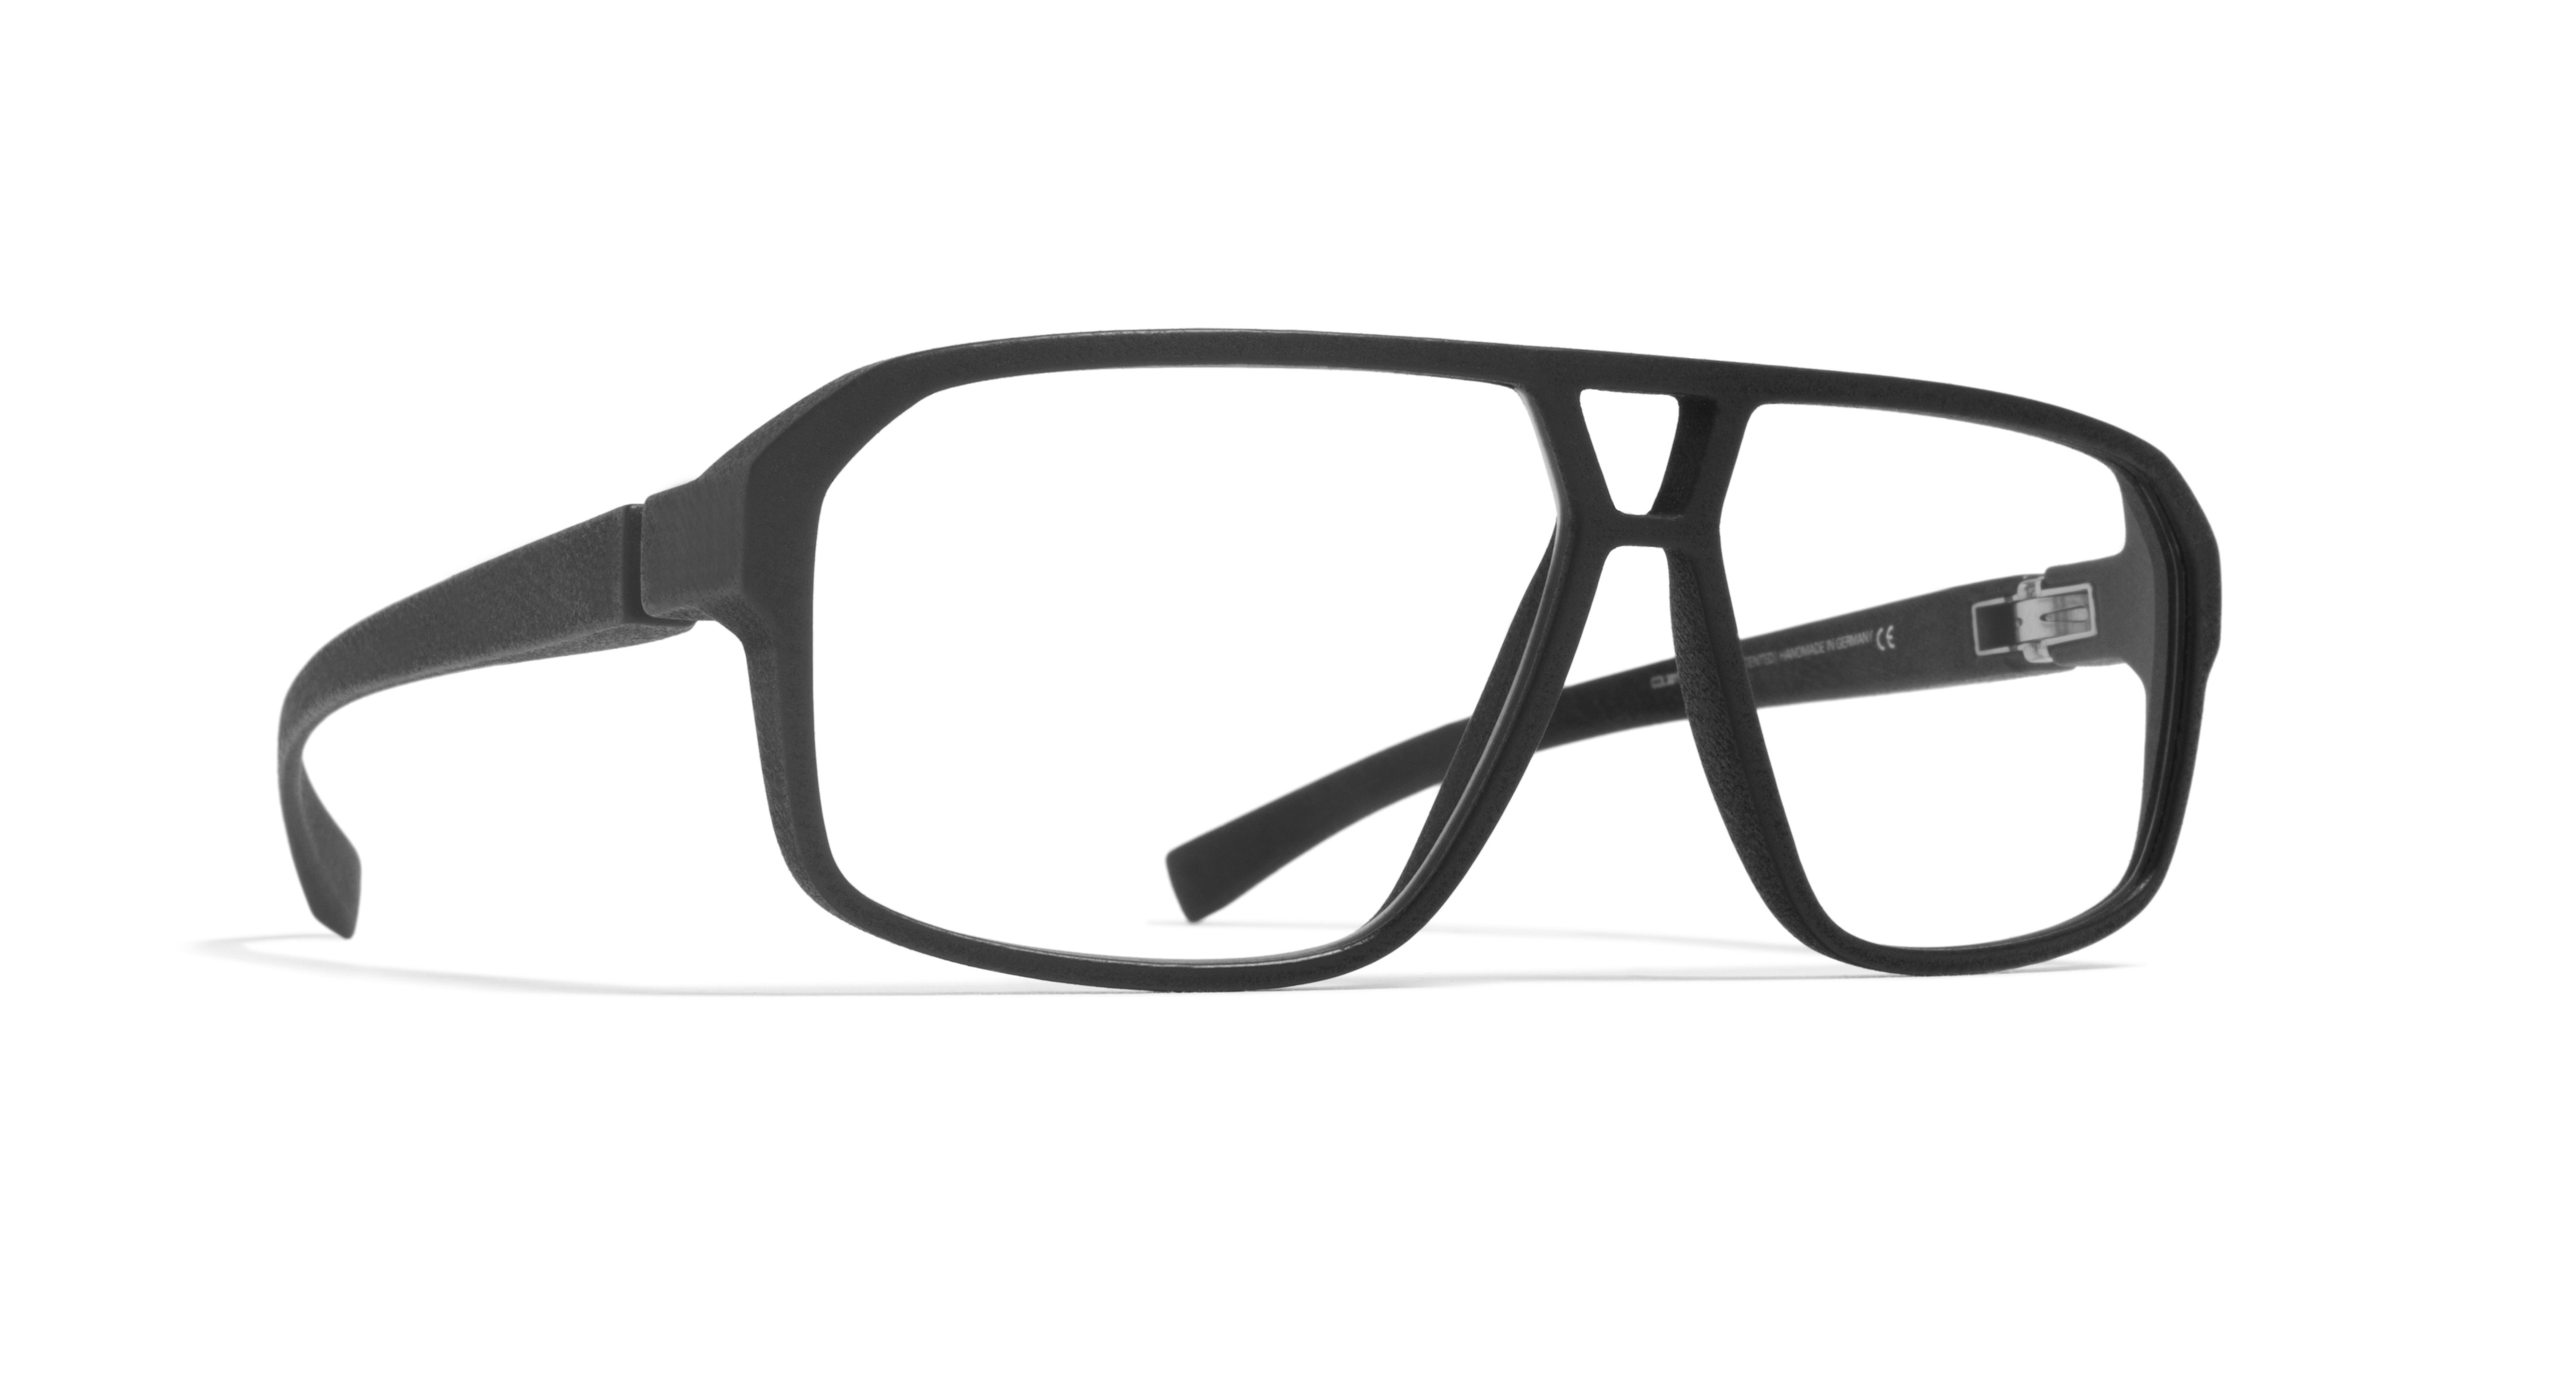 Mykita Mylon PANTARA Eyeglasses - Mykita Mylon Authorized Retailer ...